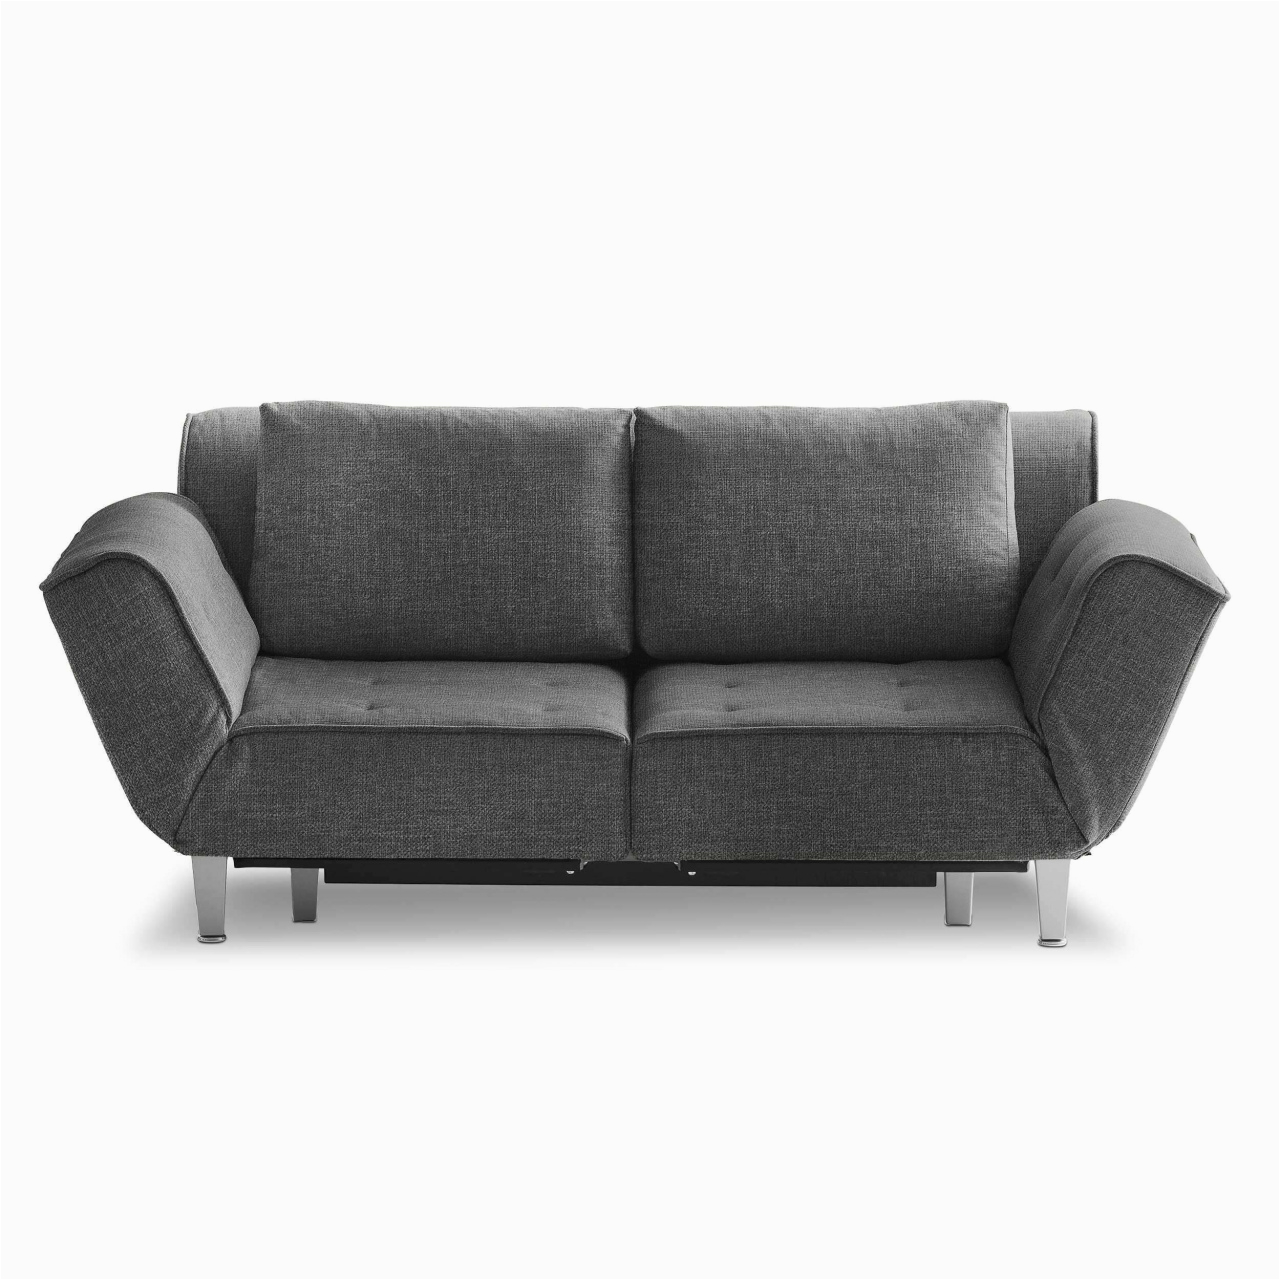 Welcher Stoff sofa sofa Bed Couch Luxus sofa Luxus Couch Gebraucht Kaufen